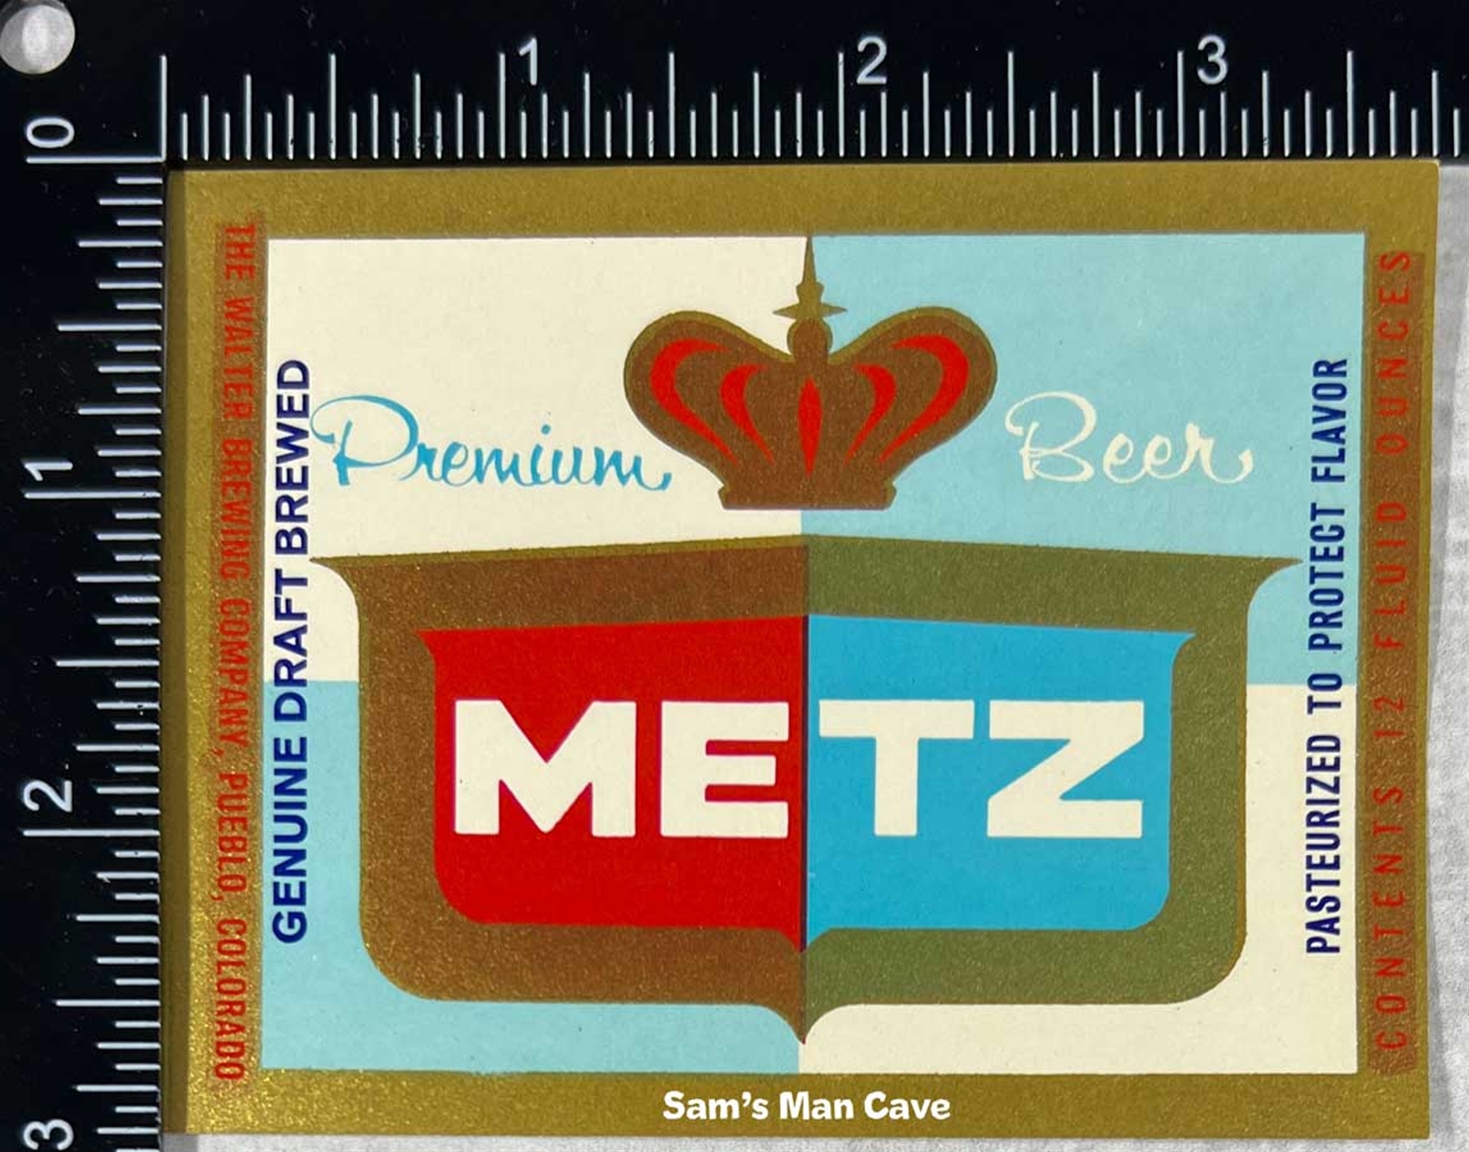 Metz Beer Label